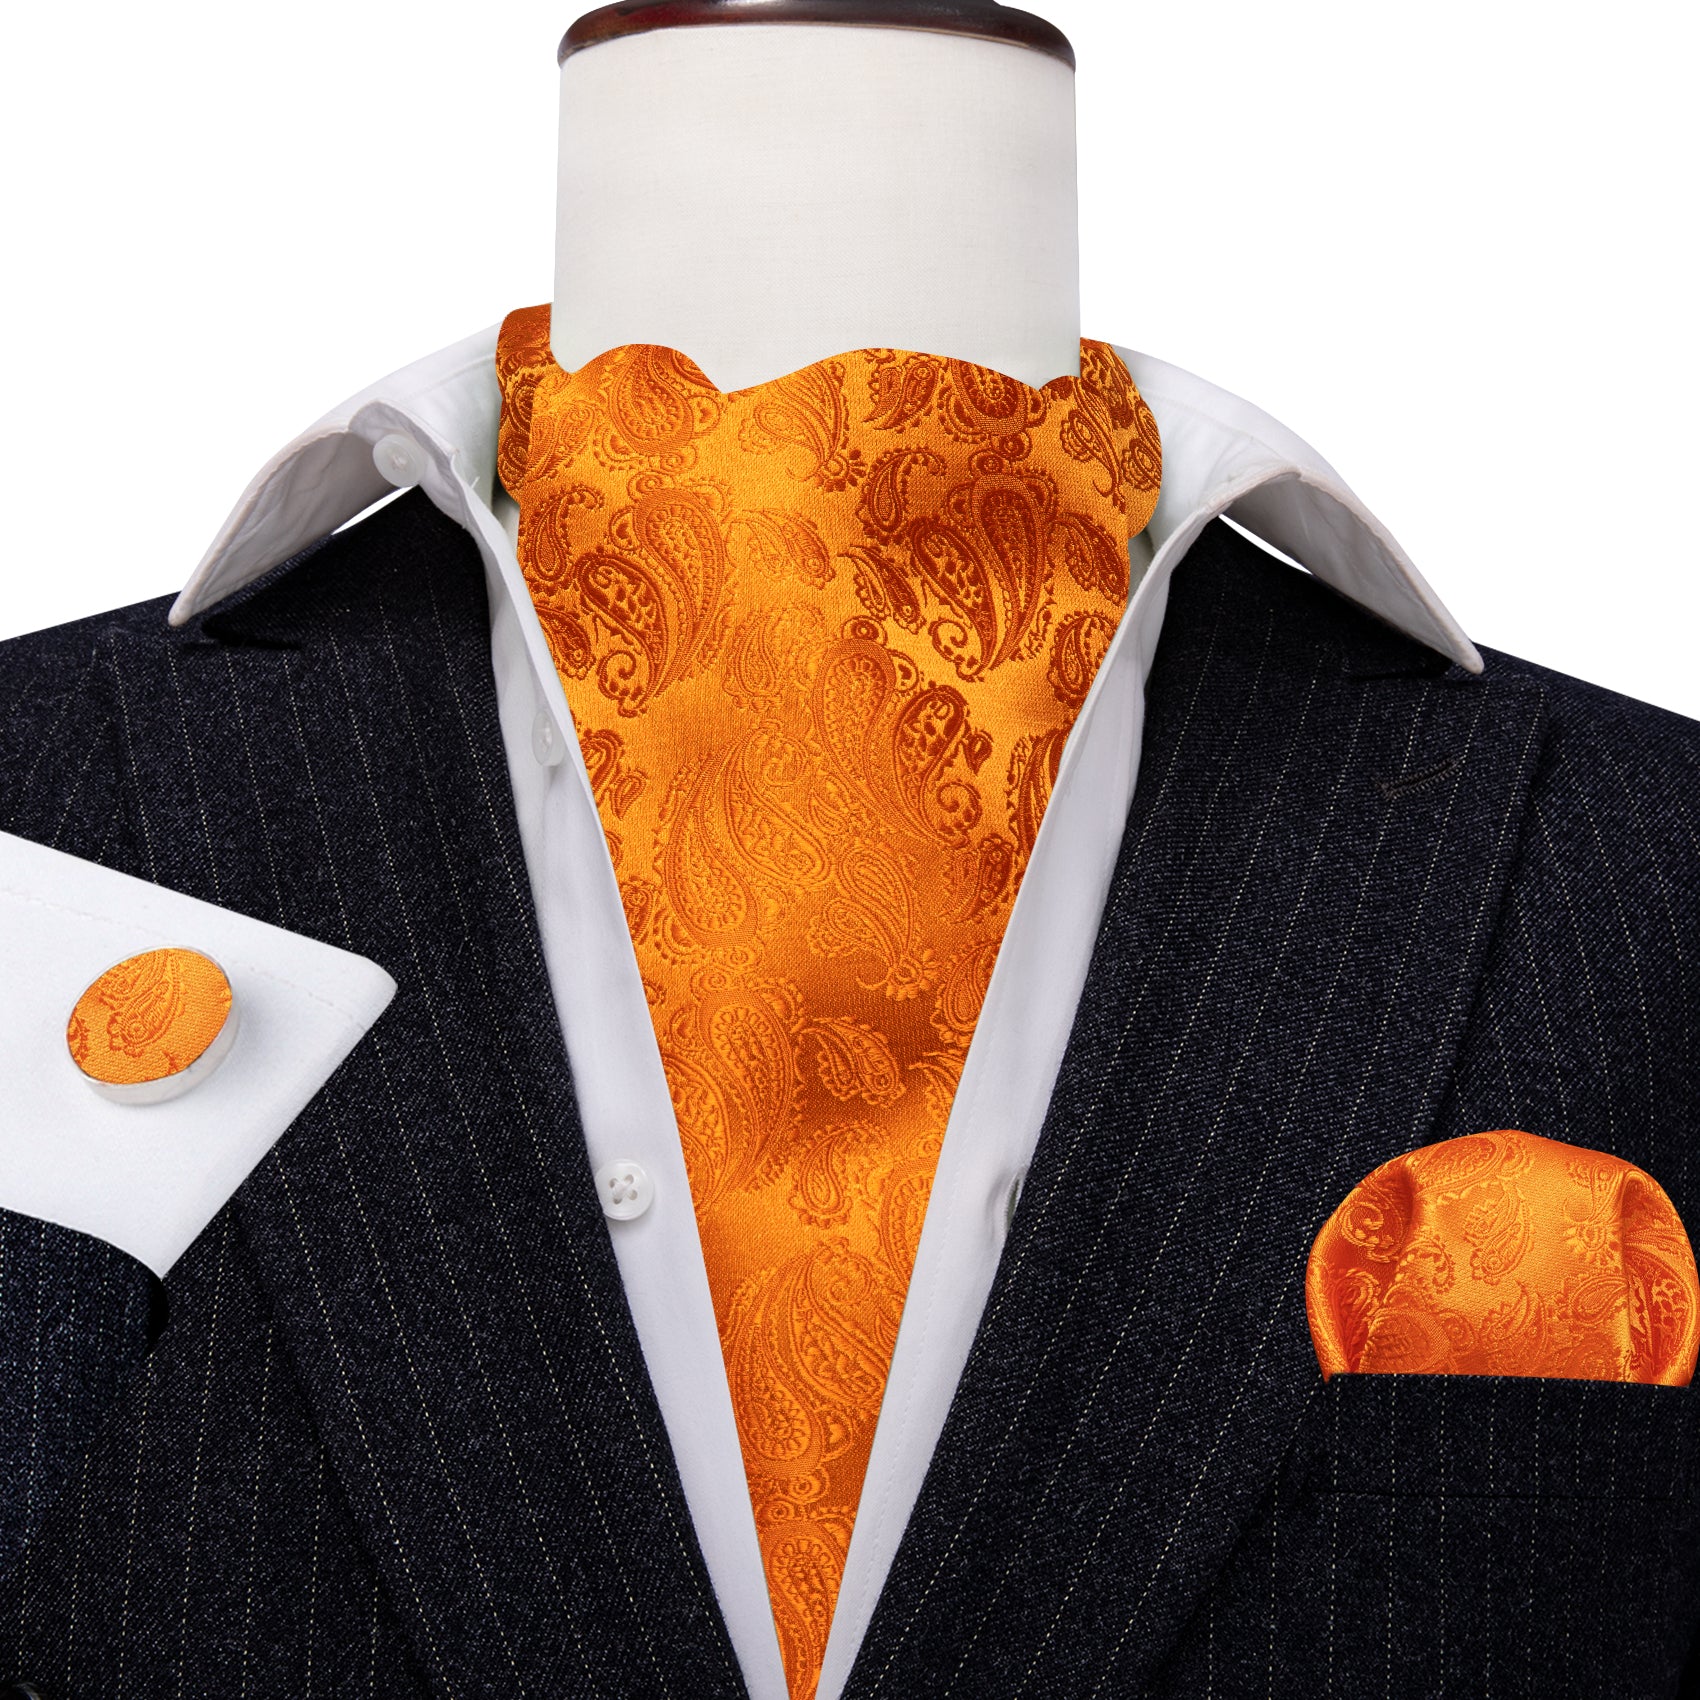 Barry.wang Orange Tie Paisley Silk Men's Ascot Tie Hanky Cufflinks Set